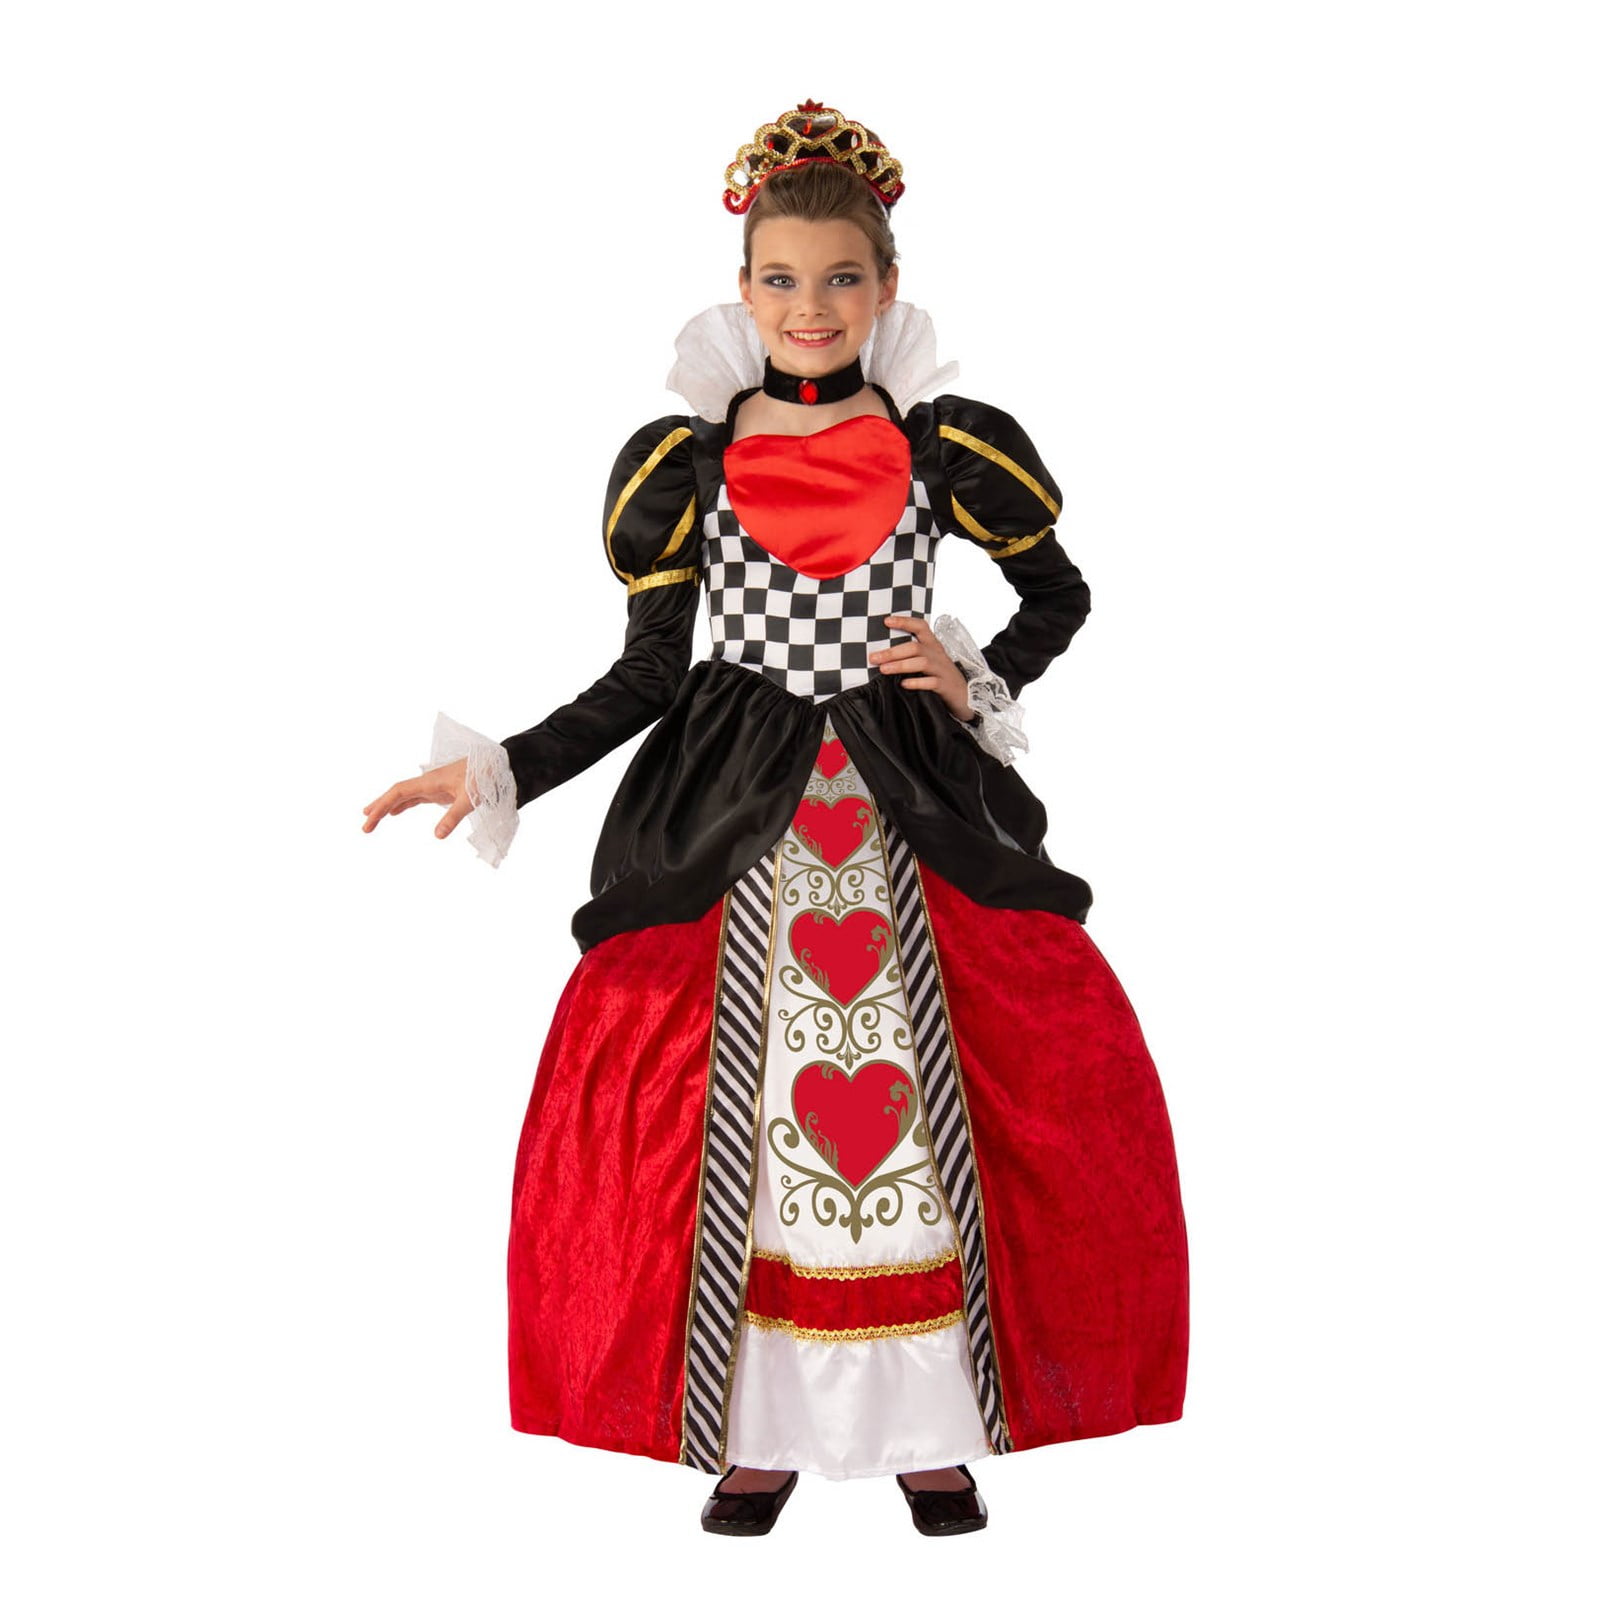 Elite Red Queen Costume for Kids - Walmart.com - Walmart.com